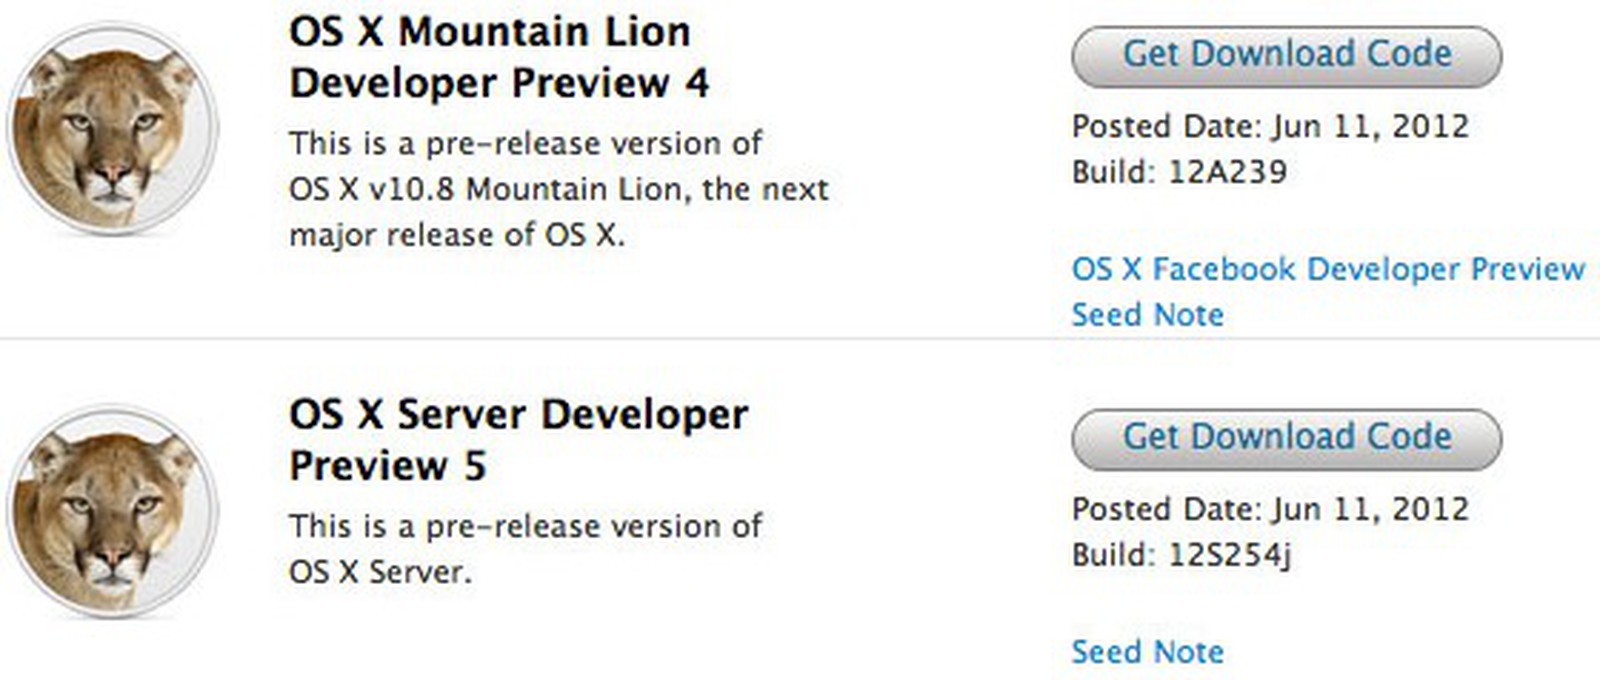 os x mountain lion server price